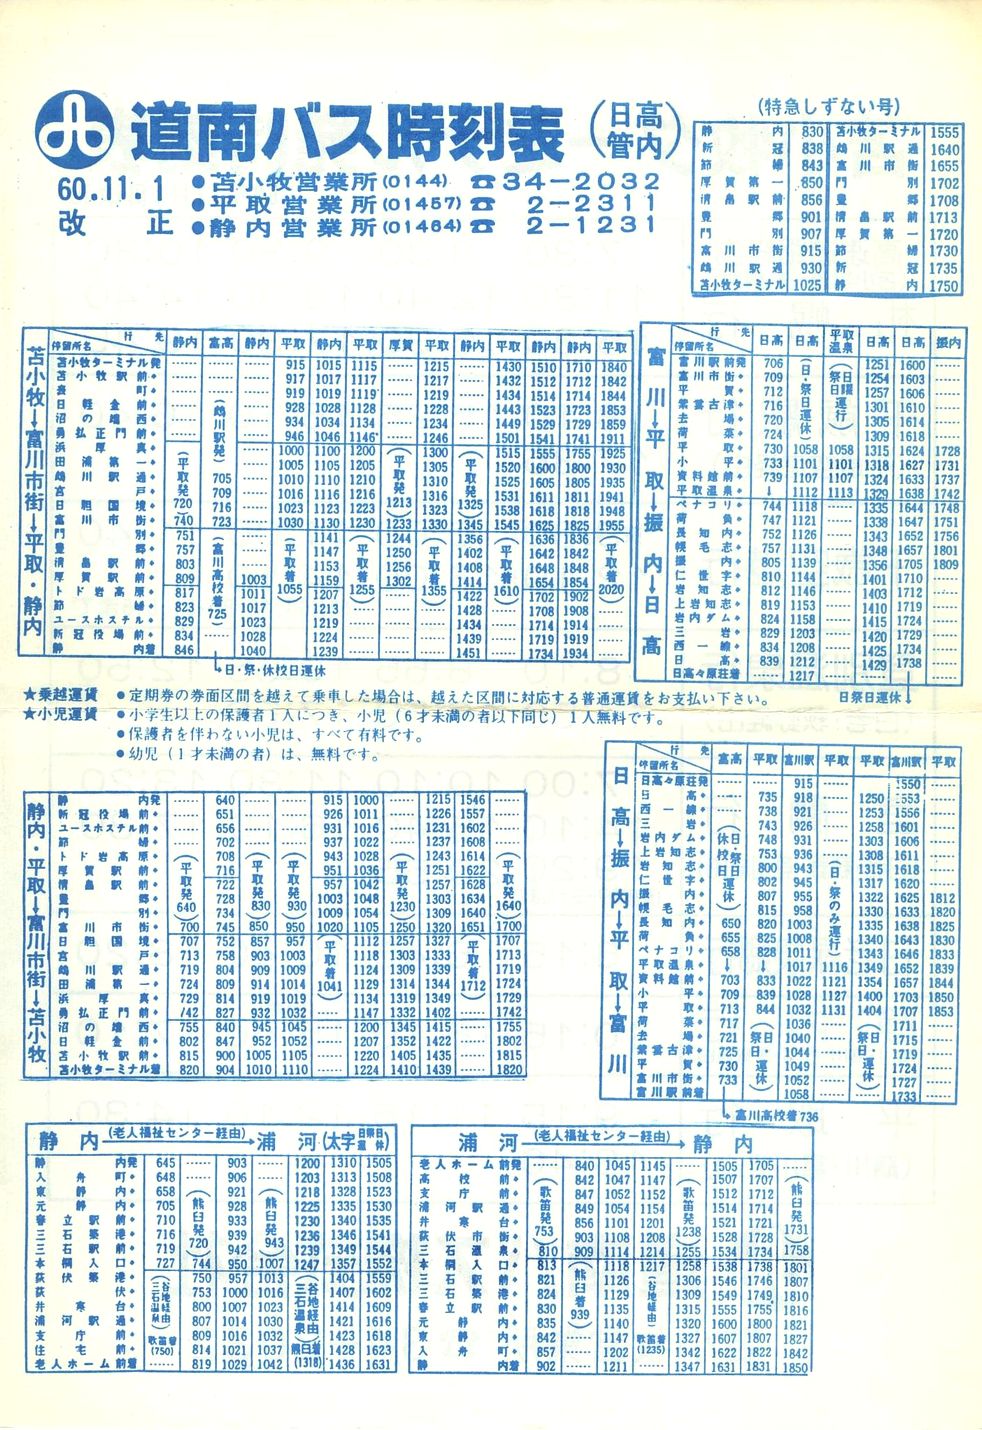 1985-11-01改正_道南バス_日高管内時刻表表面